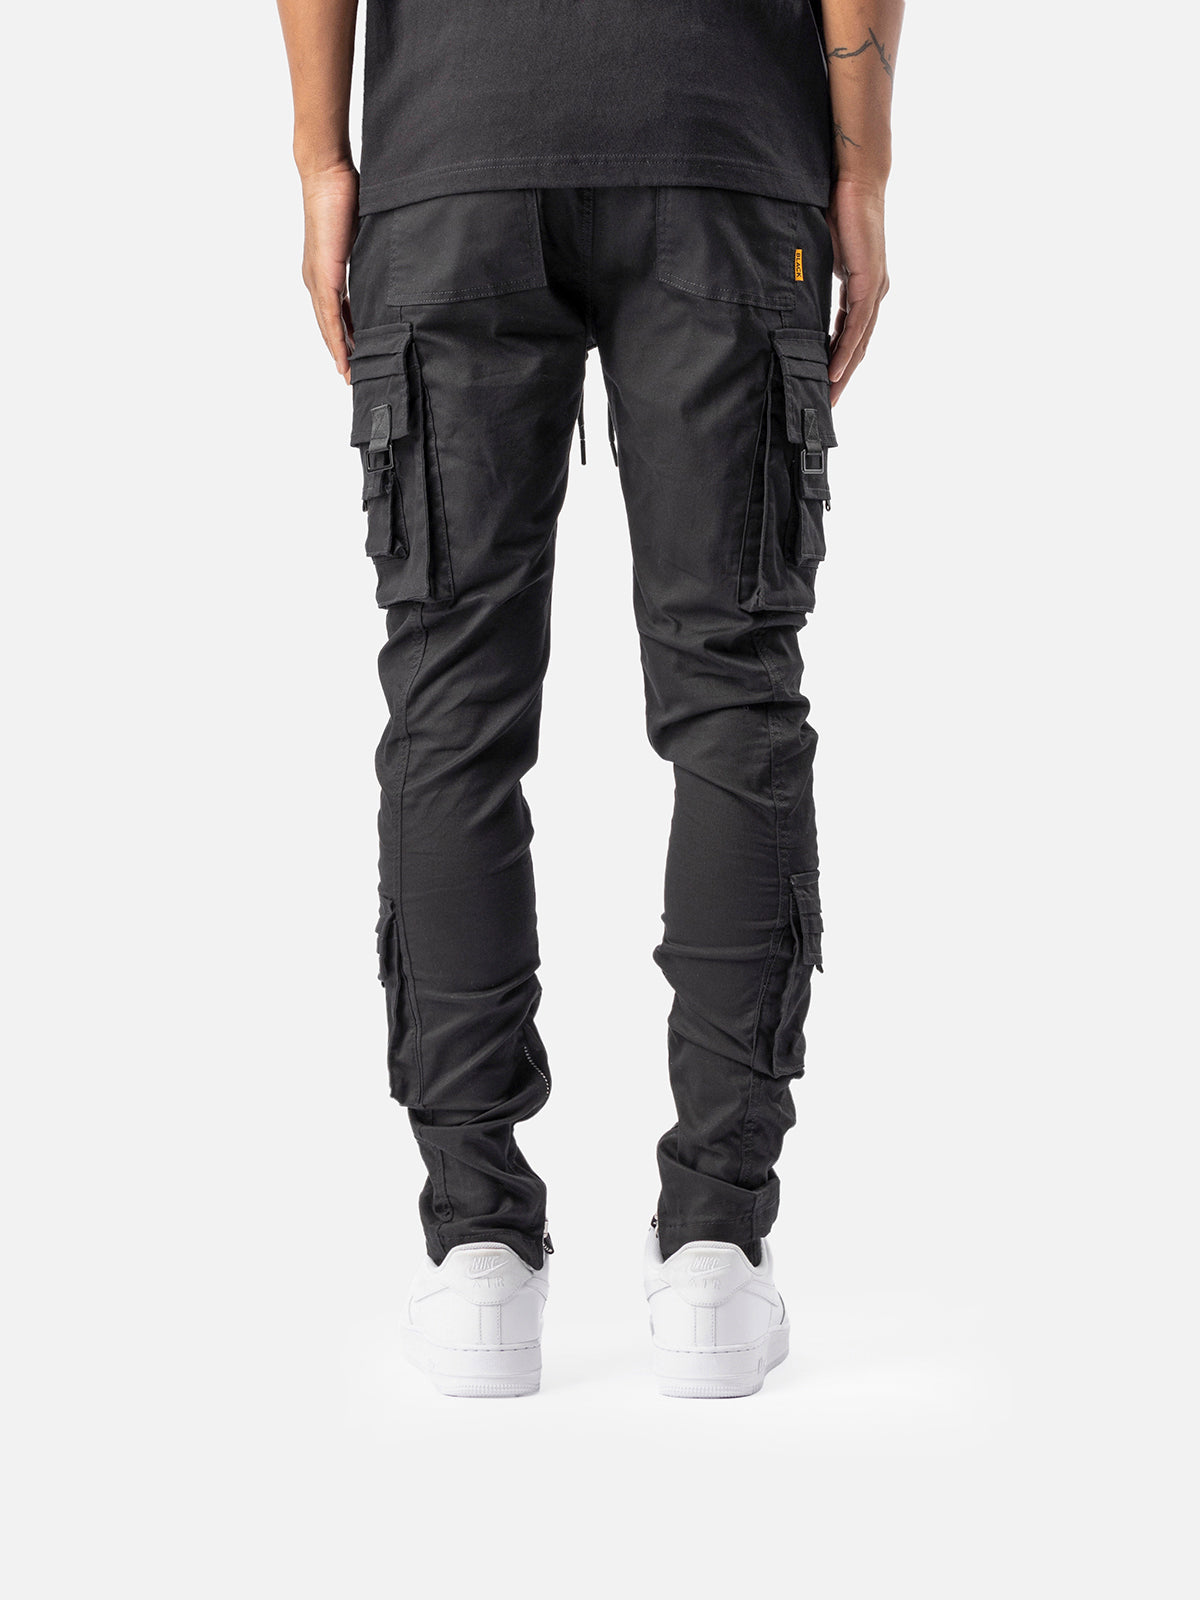 N27 Cargo Pants - Khaki  Blacktailor – BLACKTAILOR